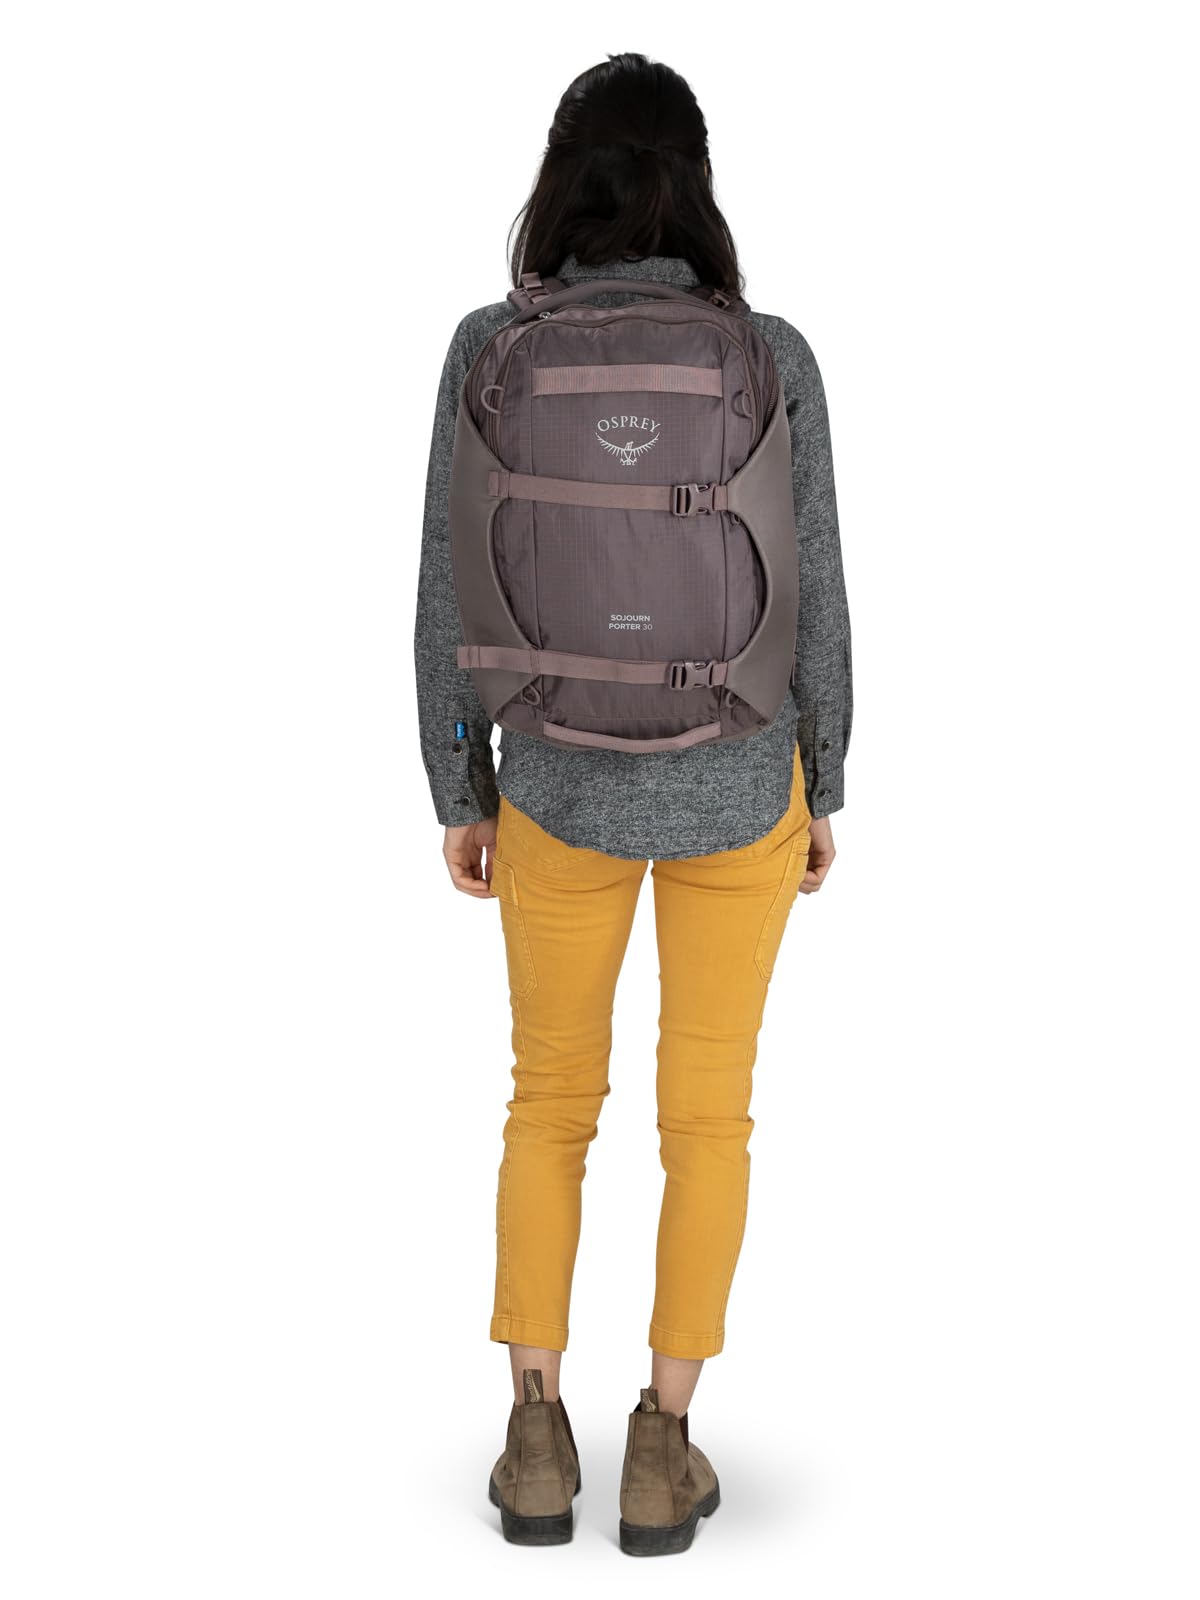 Osprey Sojourn Porter 30L Travel Backpack, Black, One Size